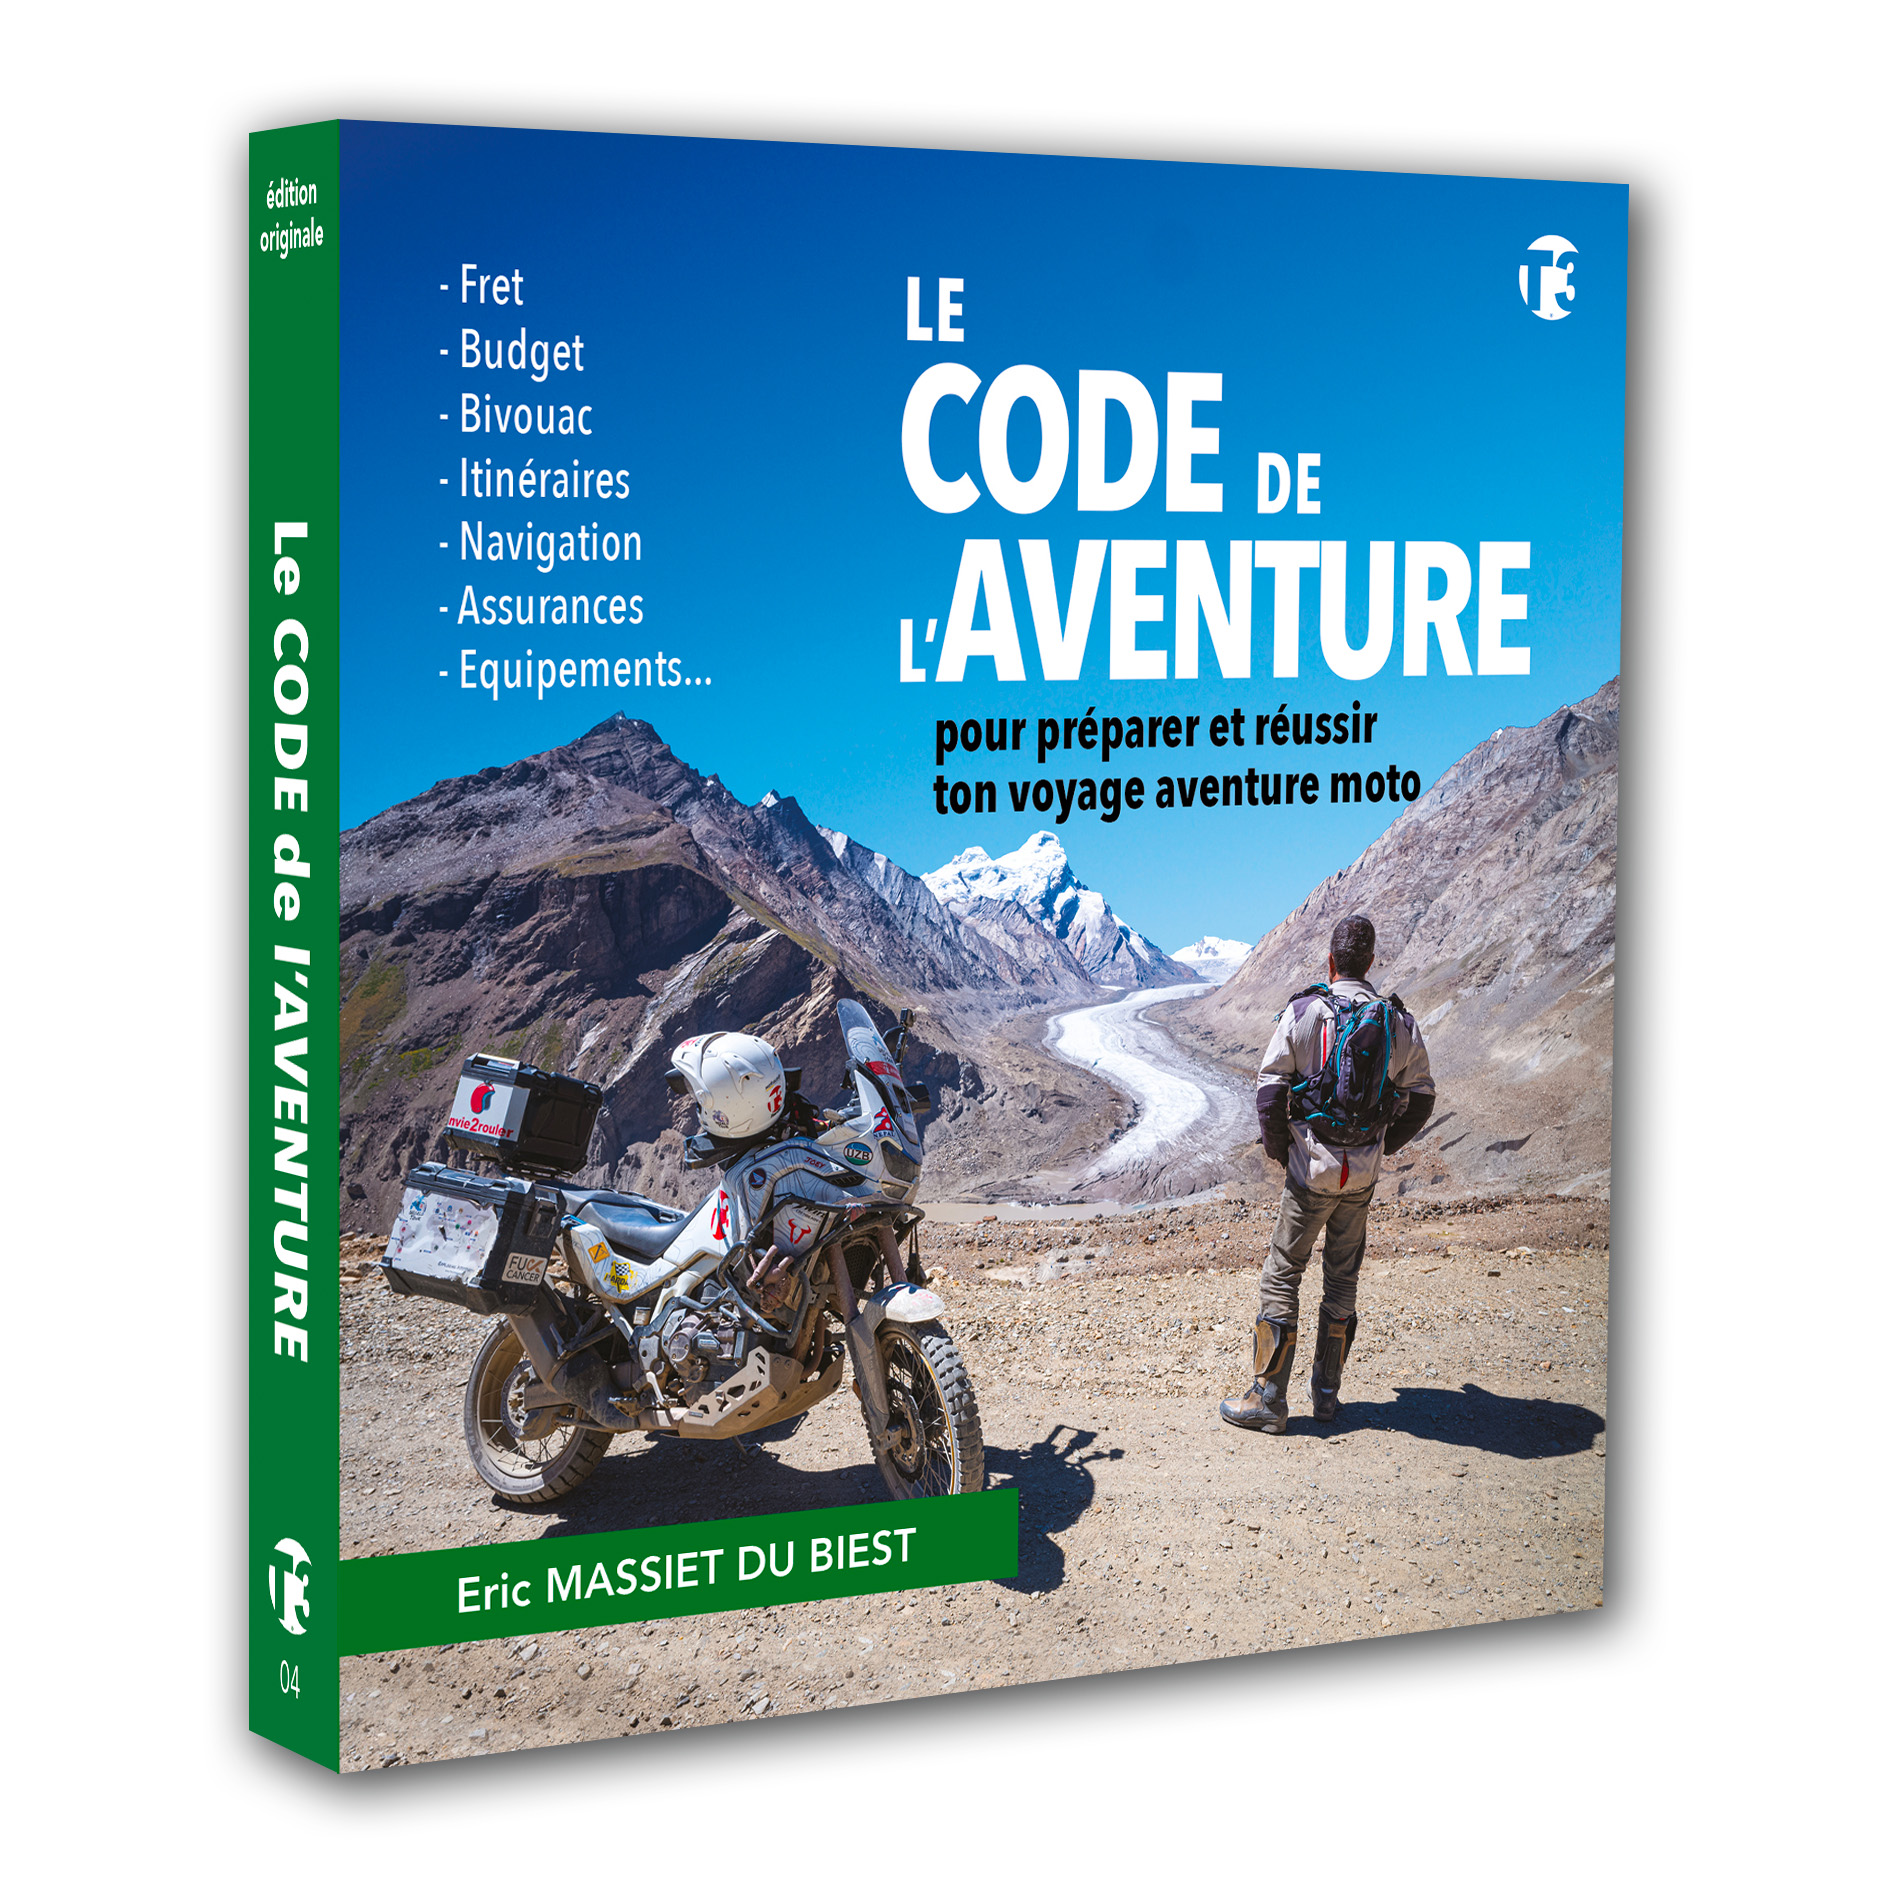 Le Code de l'Aventure est le guide pratique pour préparer et réussir ton voyage aventure moto